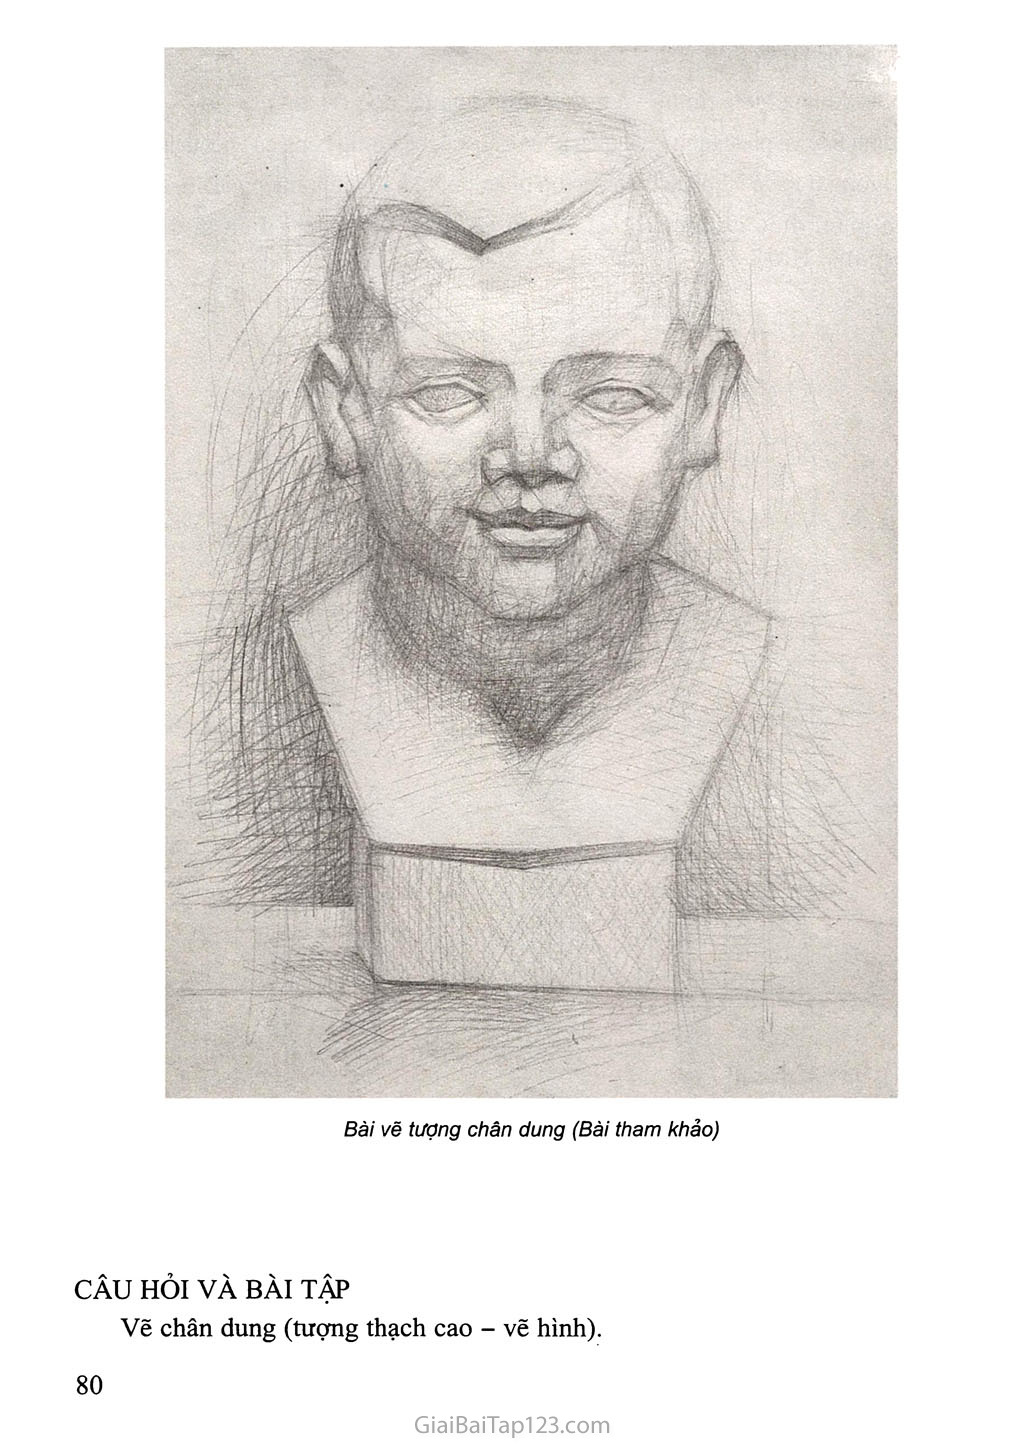 Bài tập vẽ theo mẫu chân dung hoặc vẽ tượng chân dung lớp 9 đã được đưa vào Sách giáo khoa Âm Nhạc và Mĩ thuật 9, bài